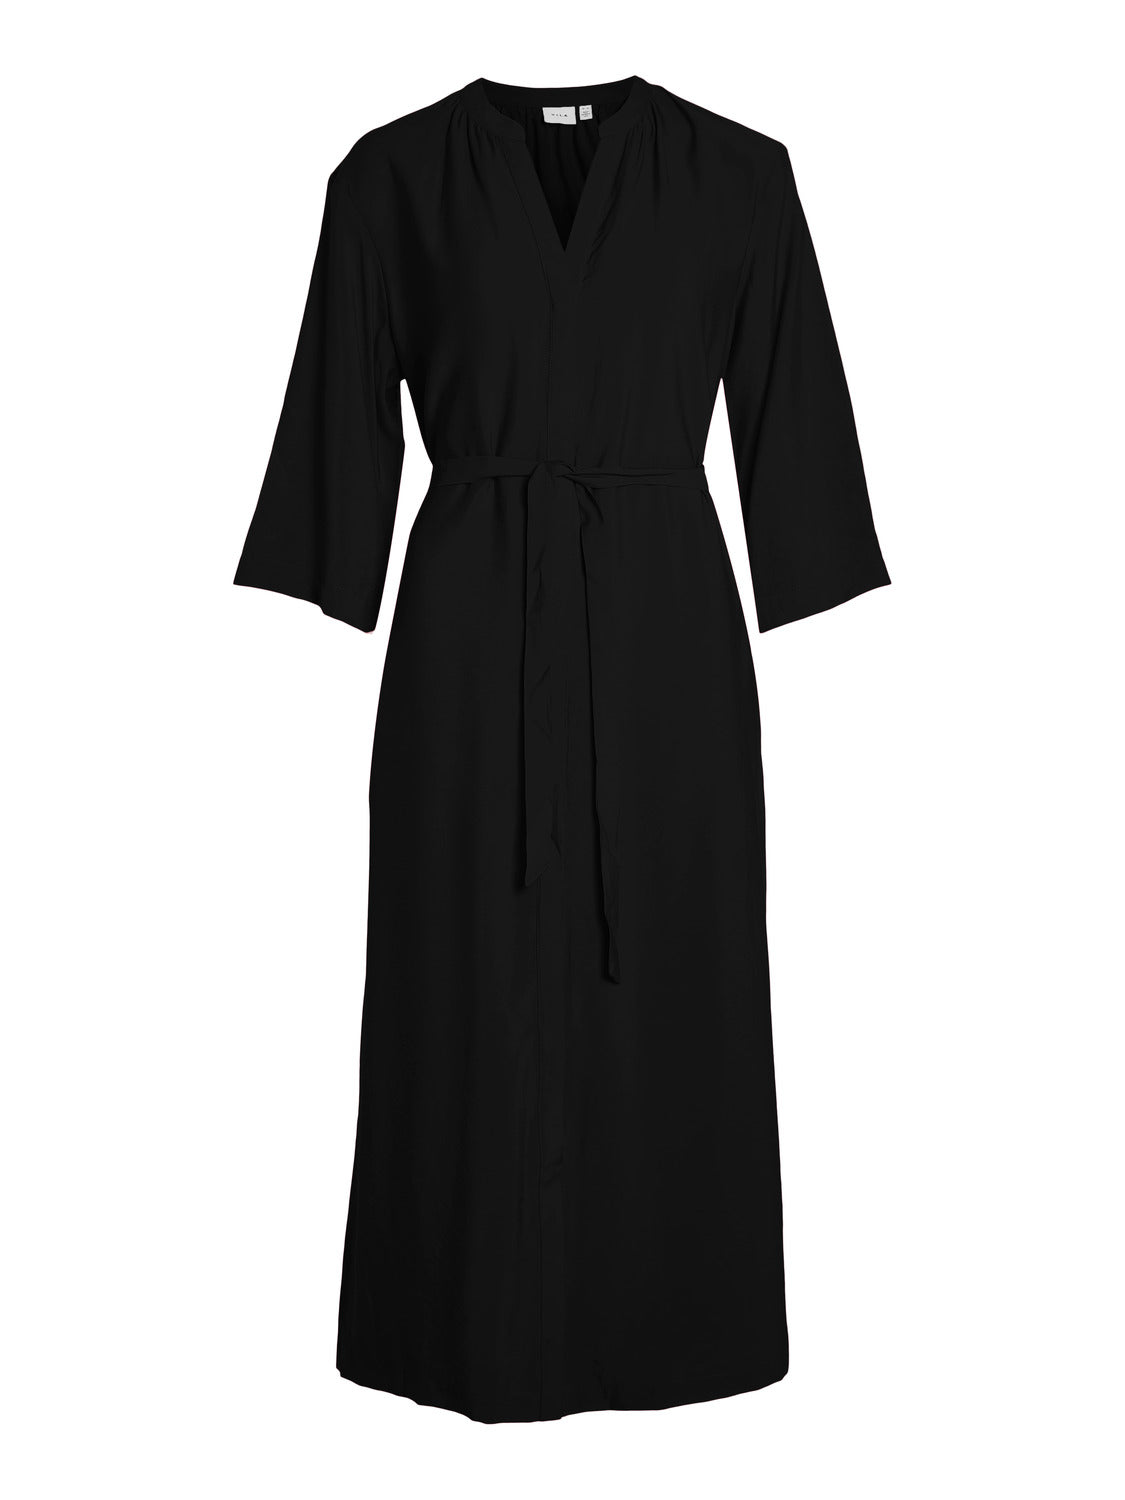 VISERO Dress - Black